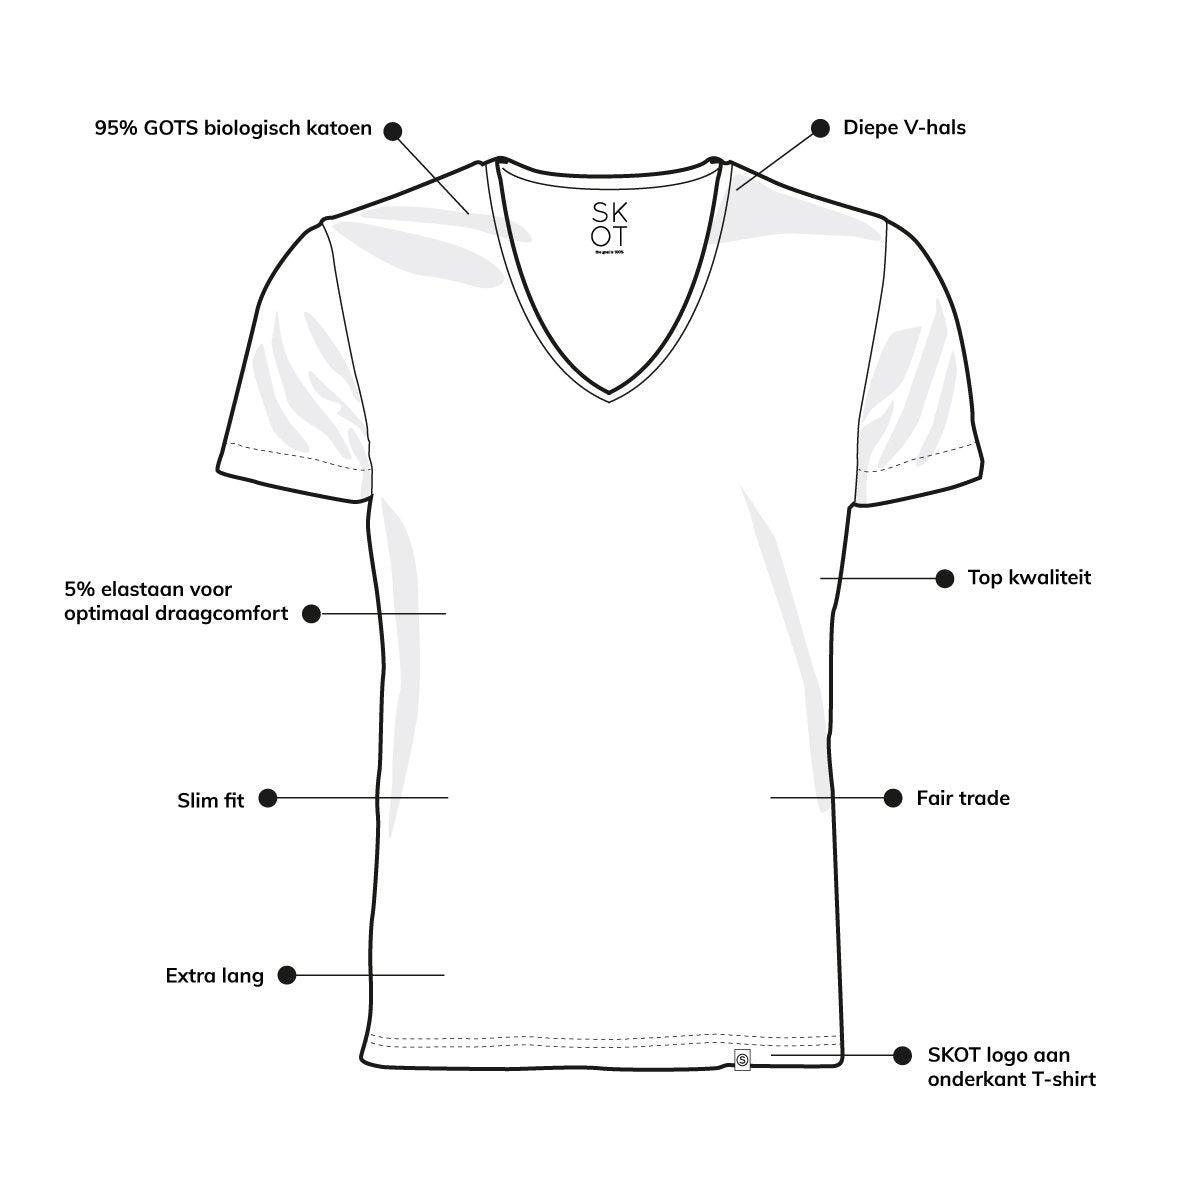 T-shirt - Ronde Hals 2-pack - Zwart